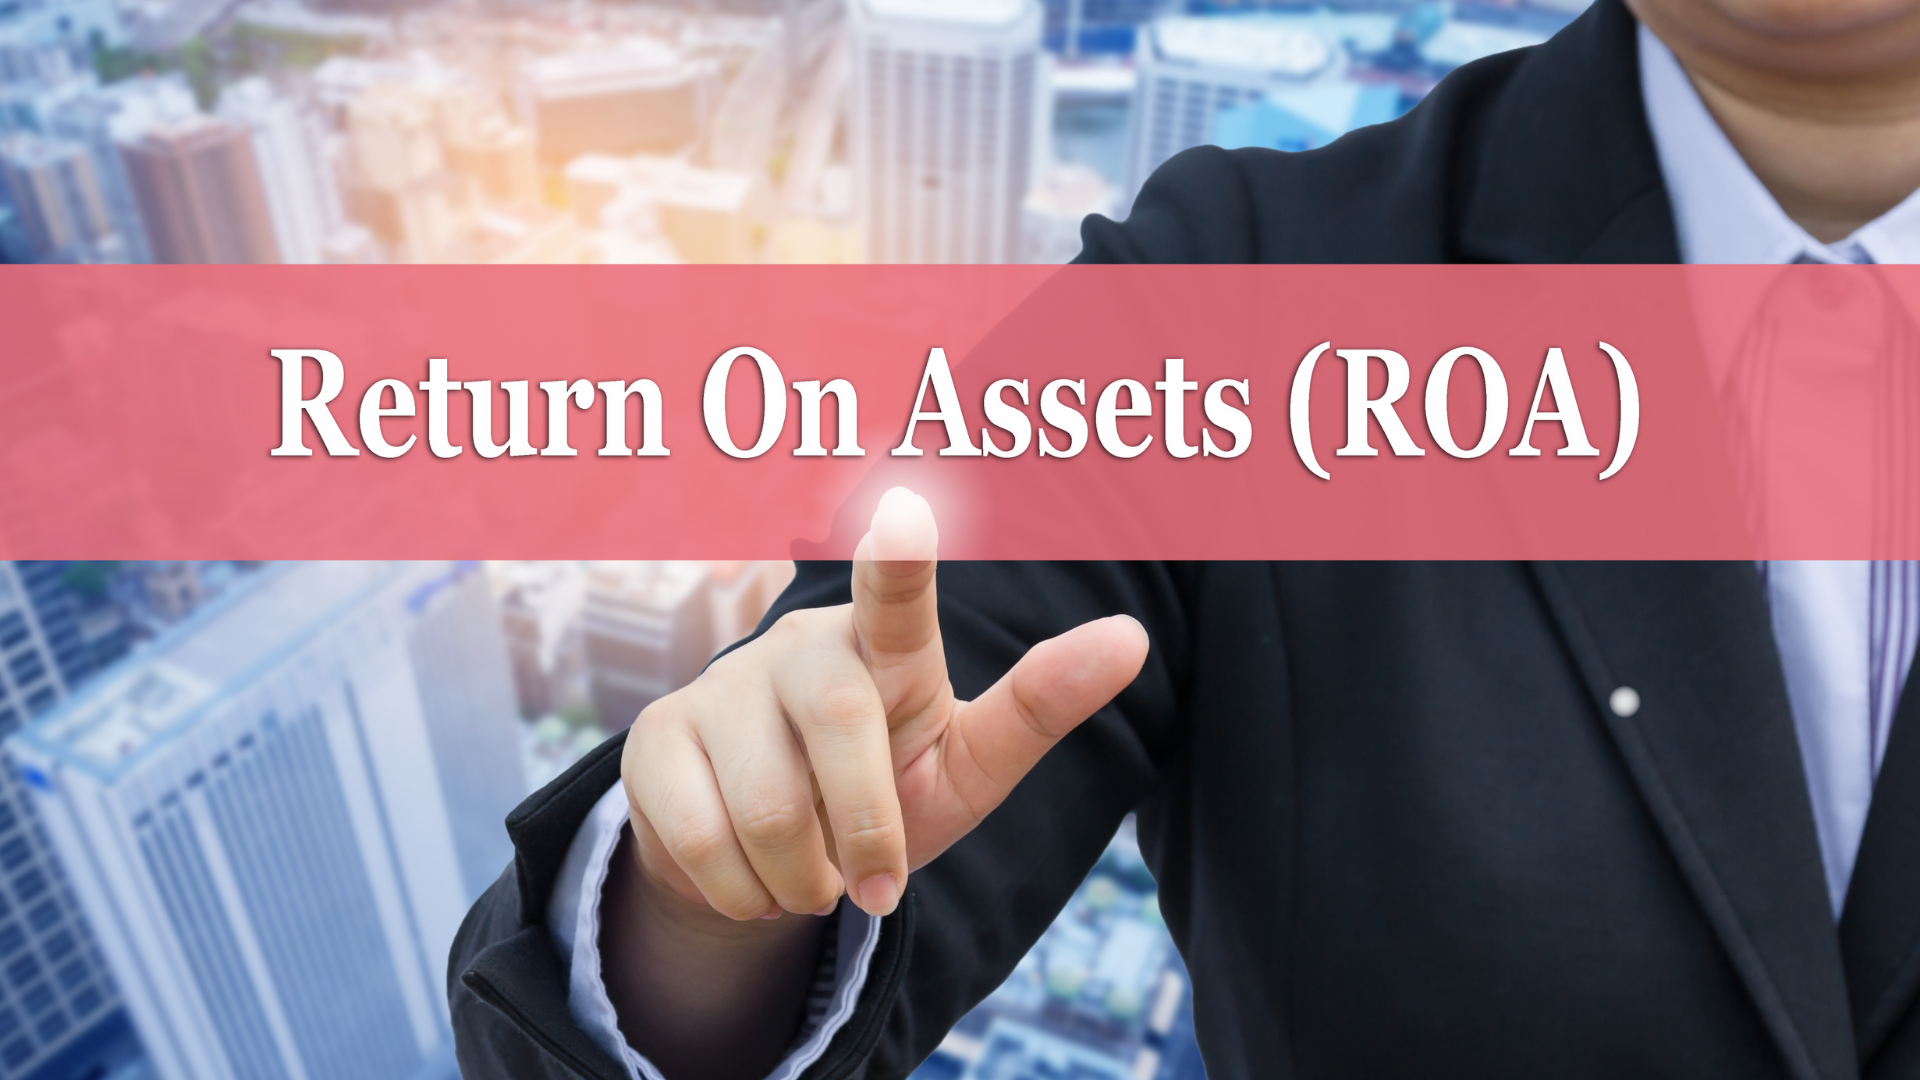 ROA mostra retorno sobre ativos da empresa; entenda indicador